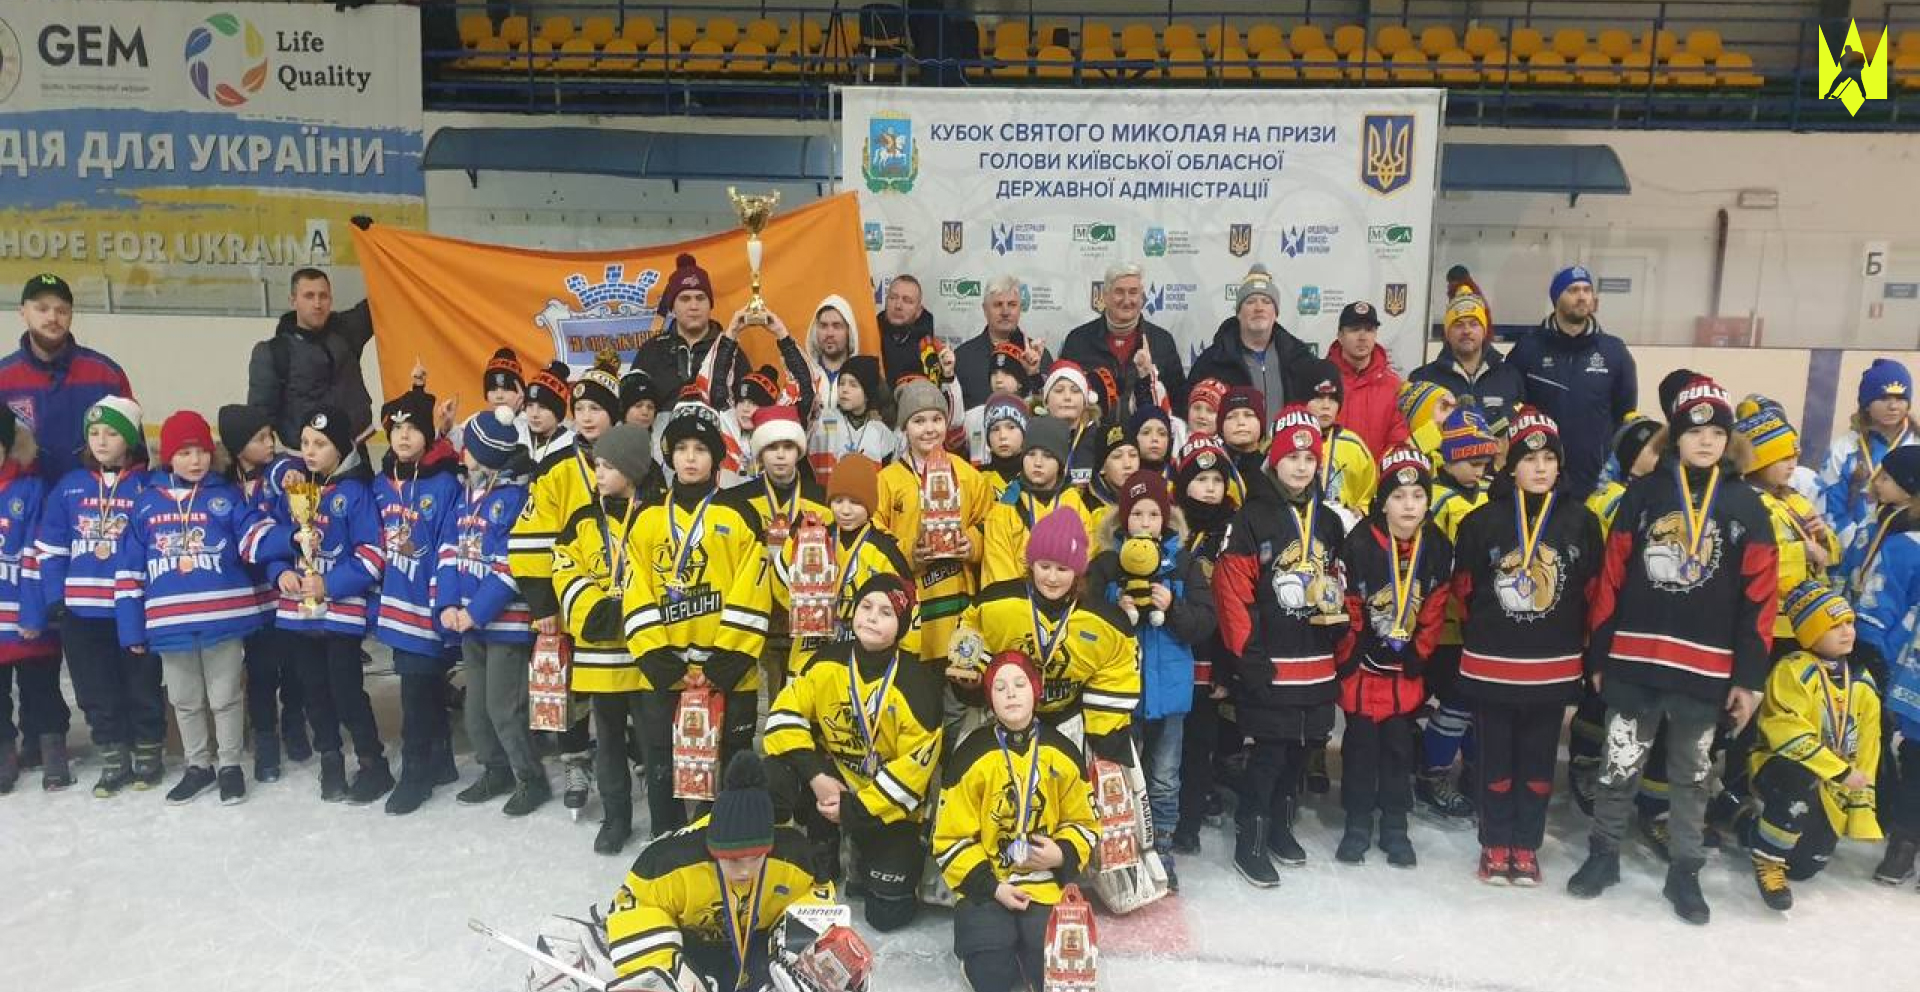 10 команд розіграли в Богуславі Кубок Святого Миколая